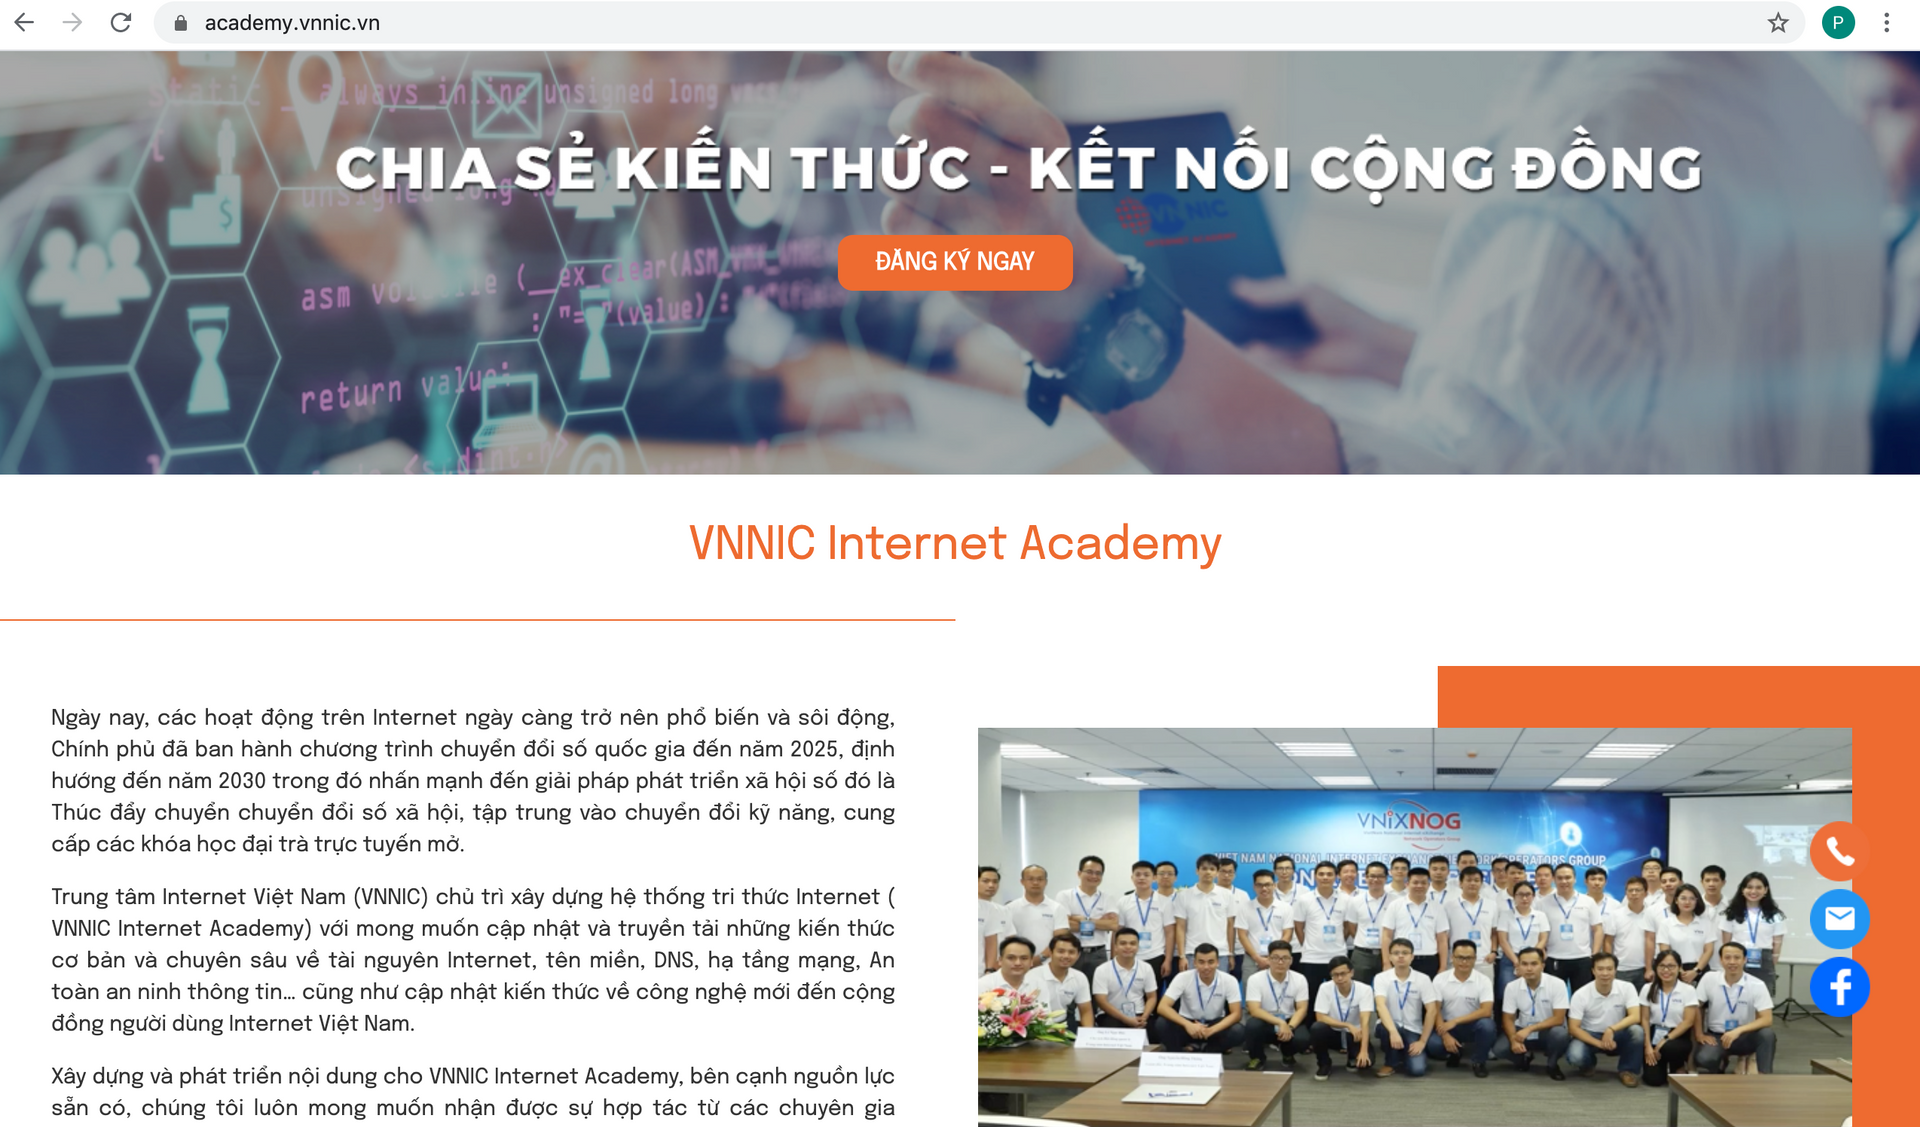 VNNIC Internet Academy: nguồn học liệu mở cho cộng đồng  - Ảnh 1.